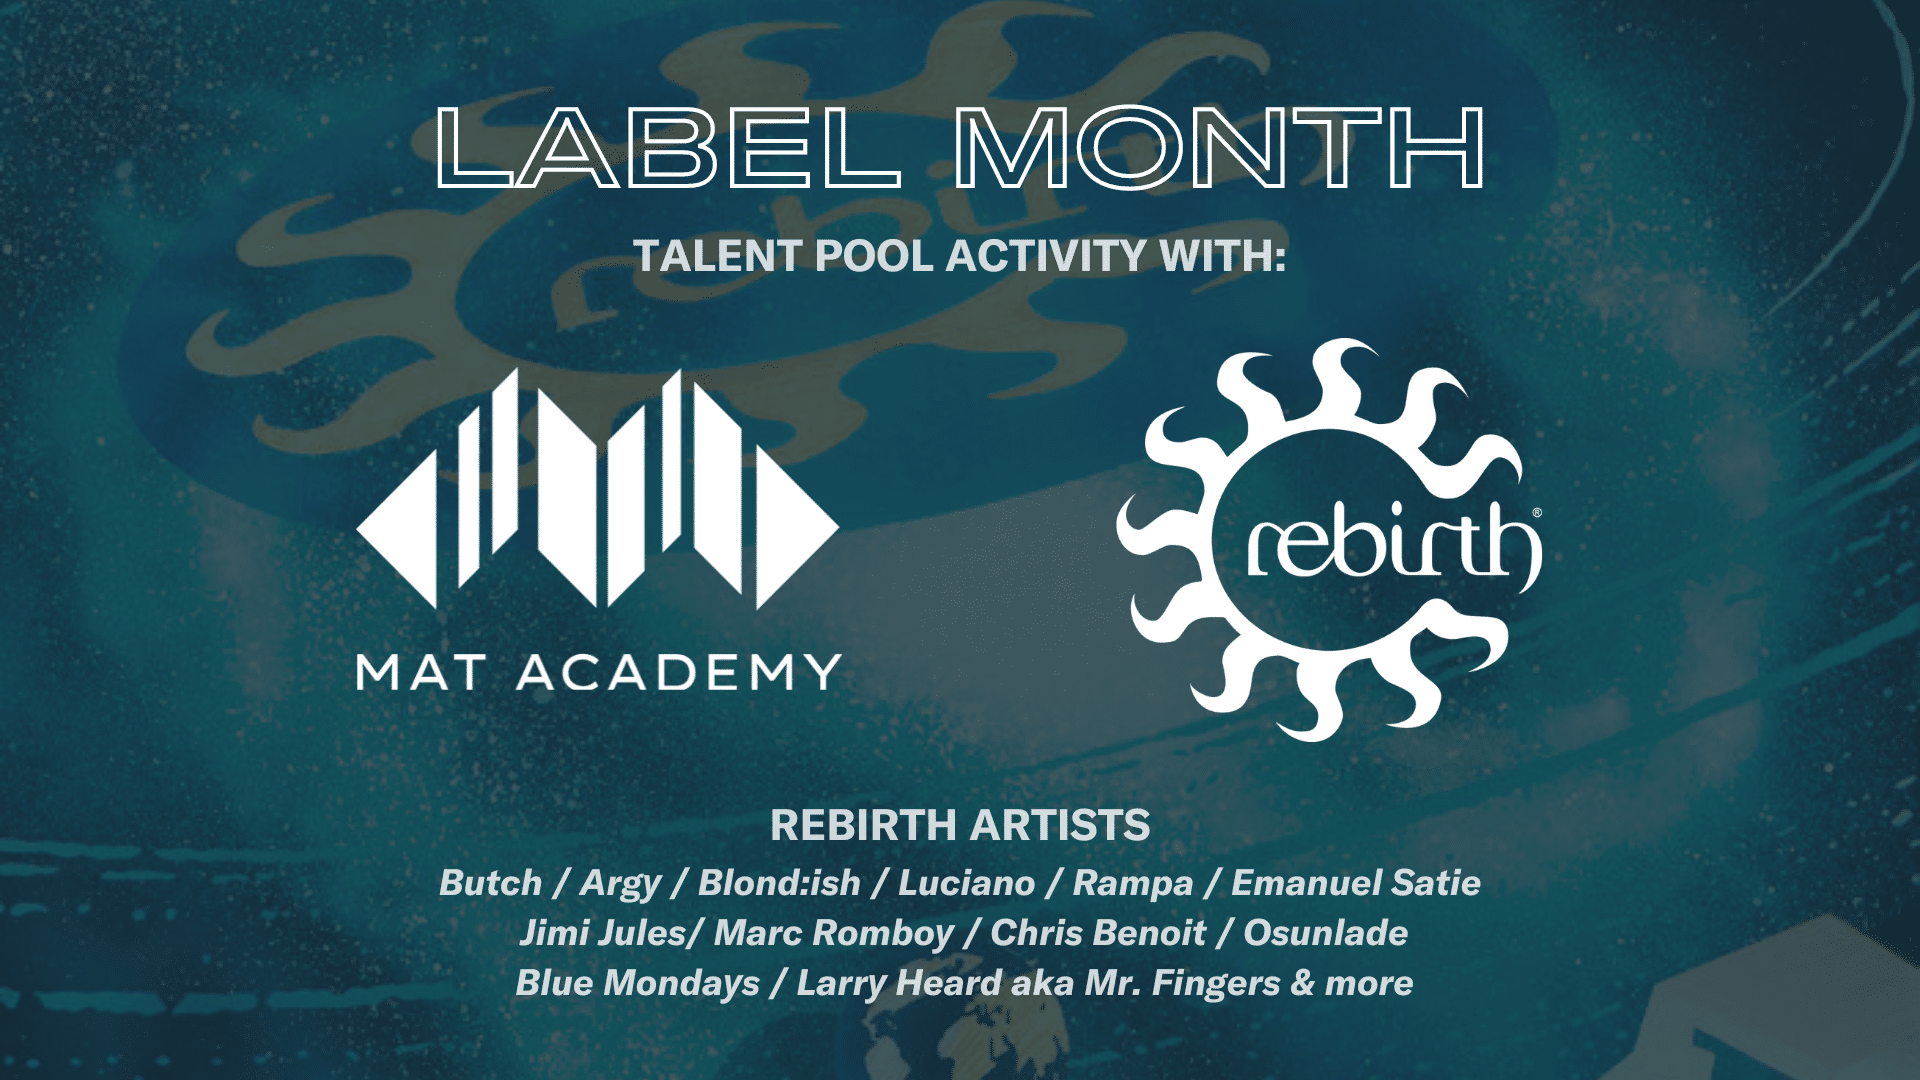 E’ arrivato il “Label Month”, una nuova opportunità di Talent Pool!